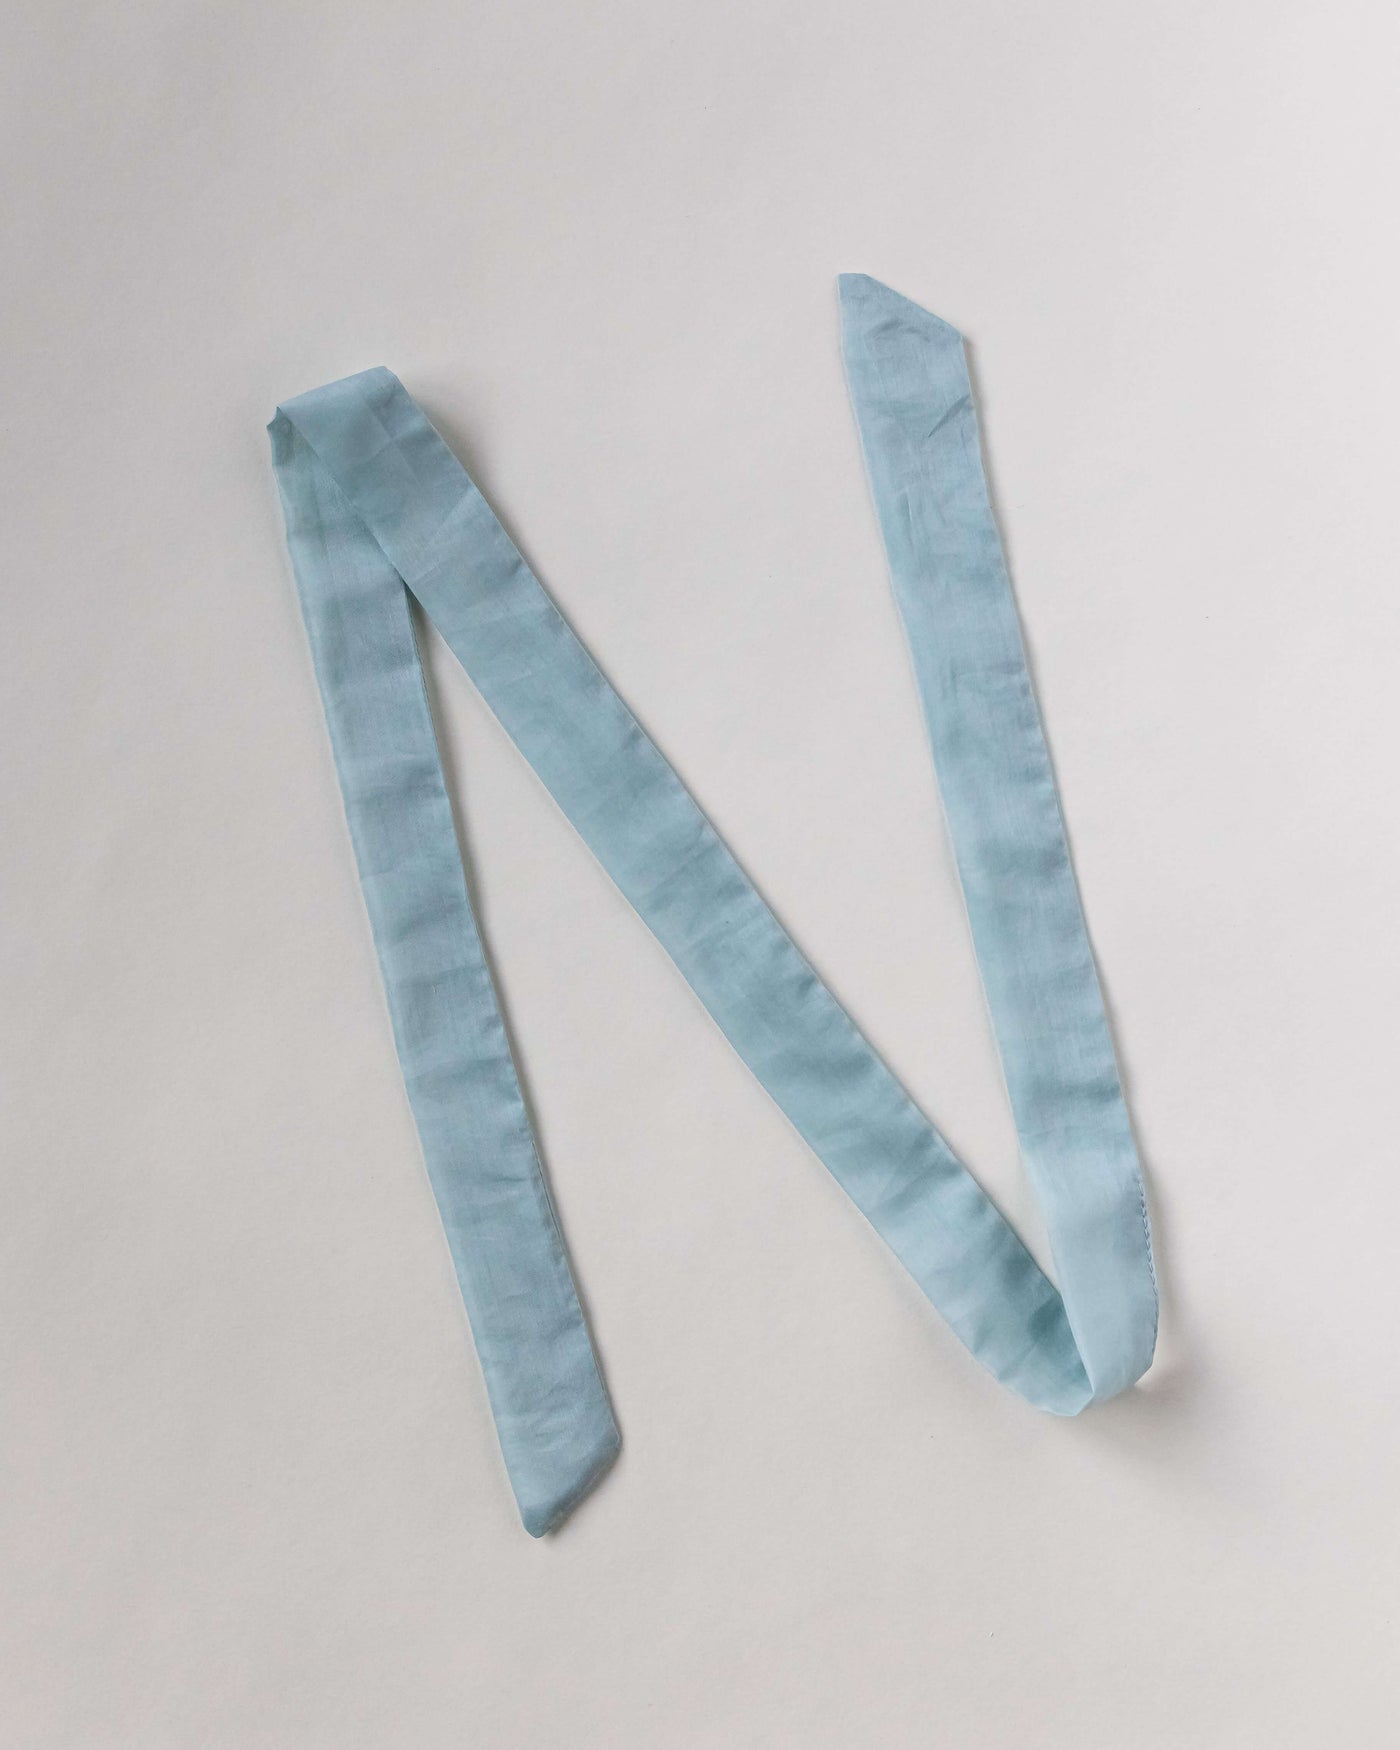 Haarband aus Baumwollseide in himmelblau von CURLY N COVERED vor weißem Hintergrund ausgelegt